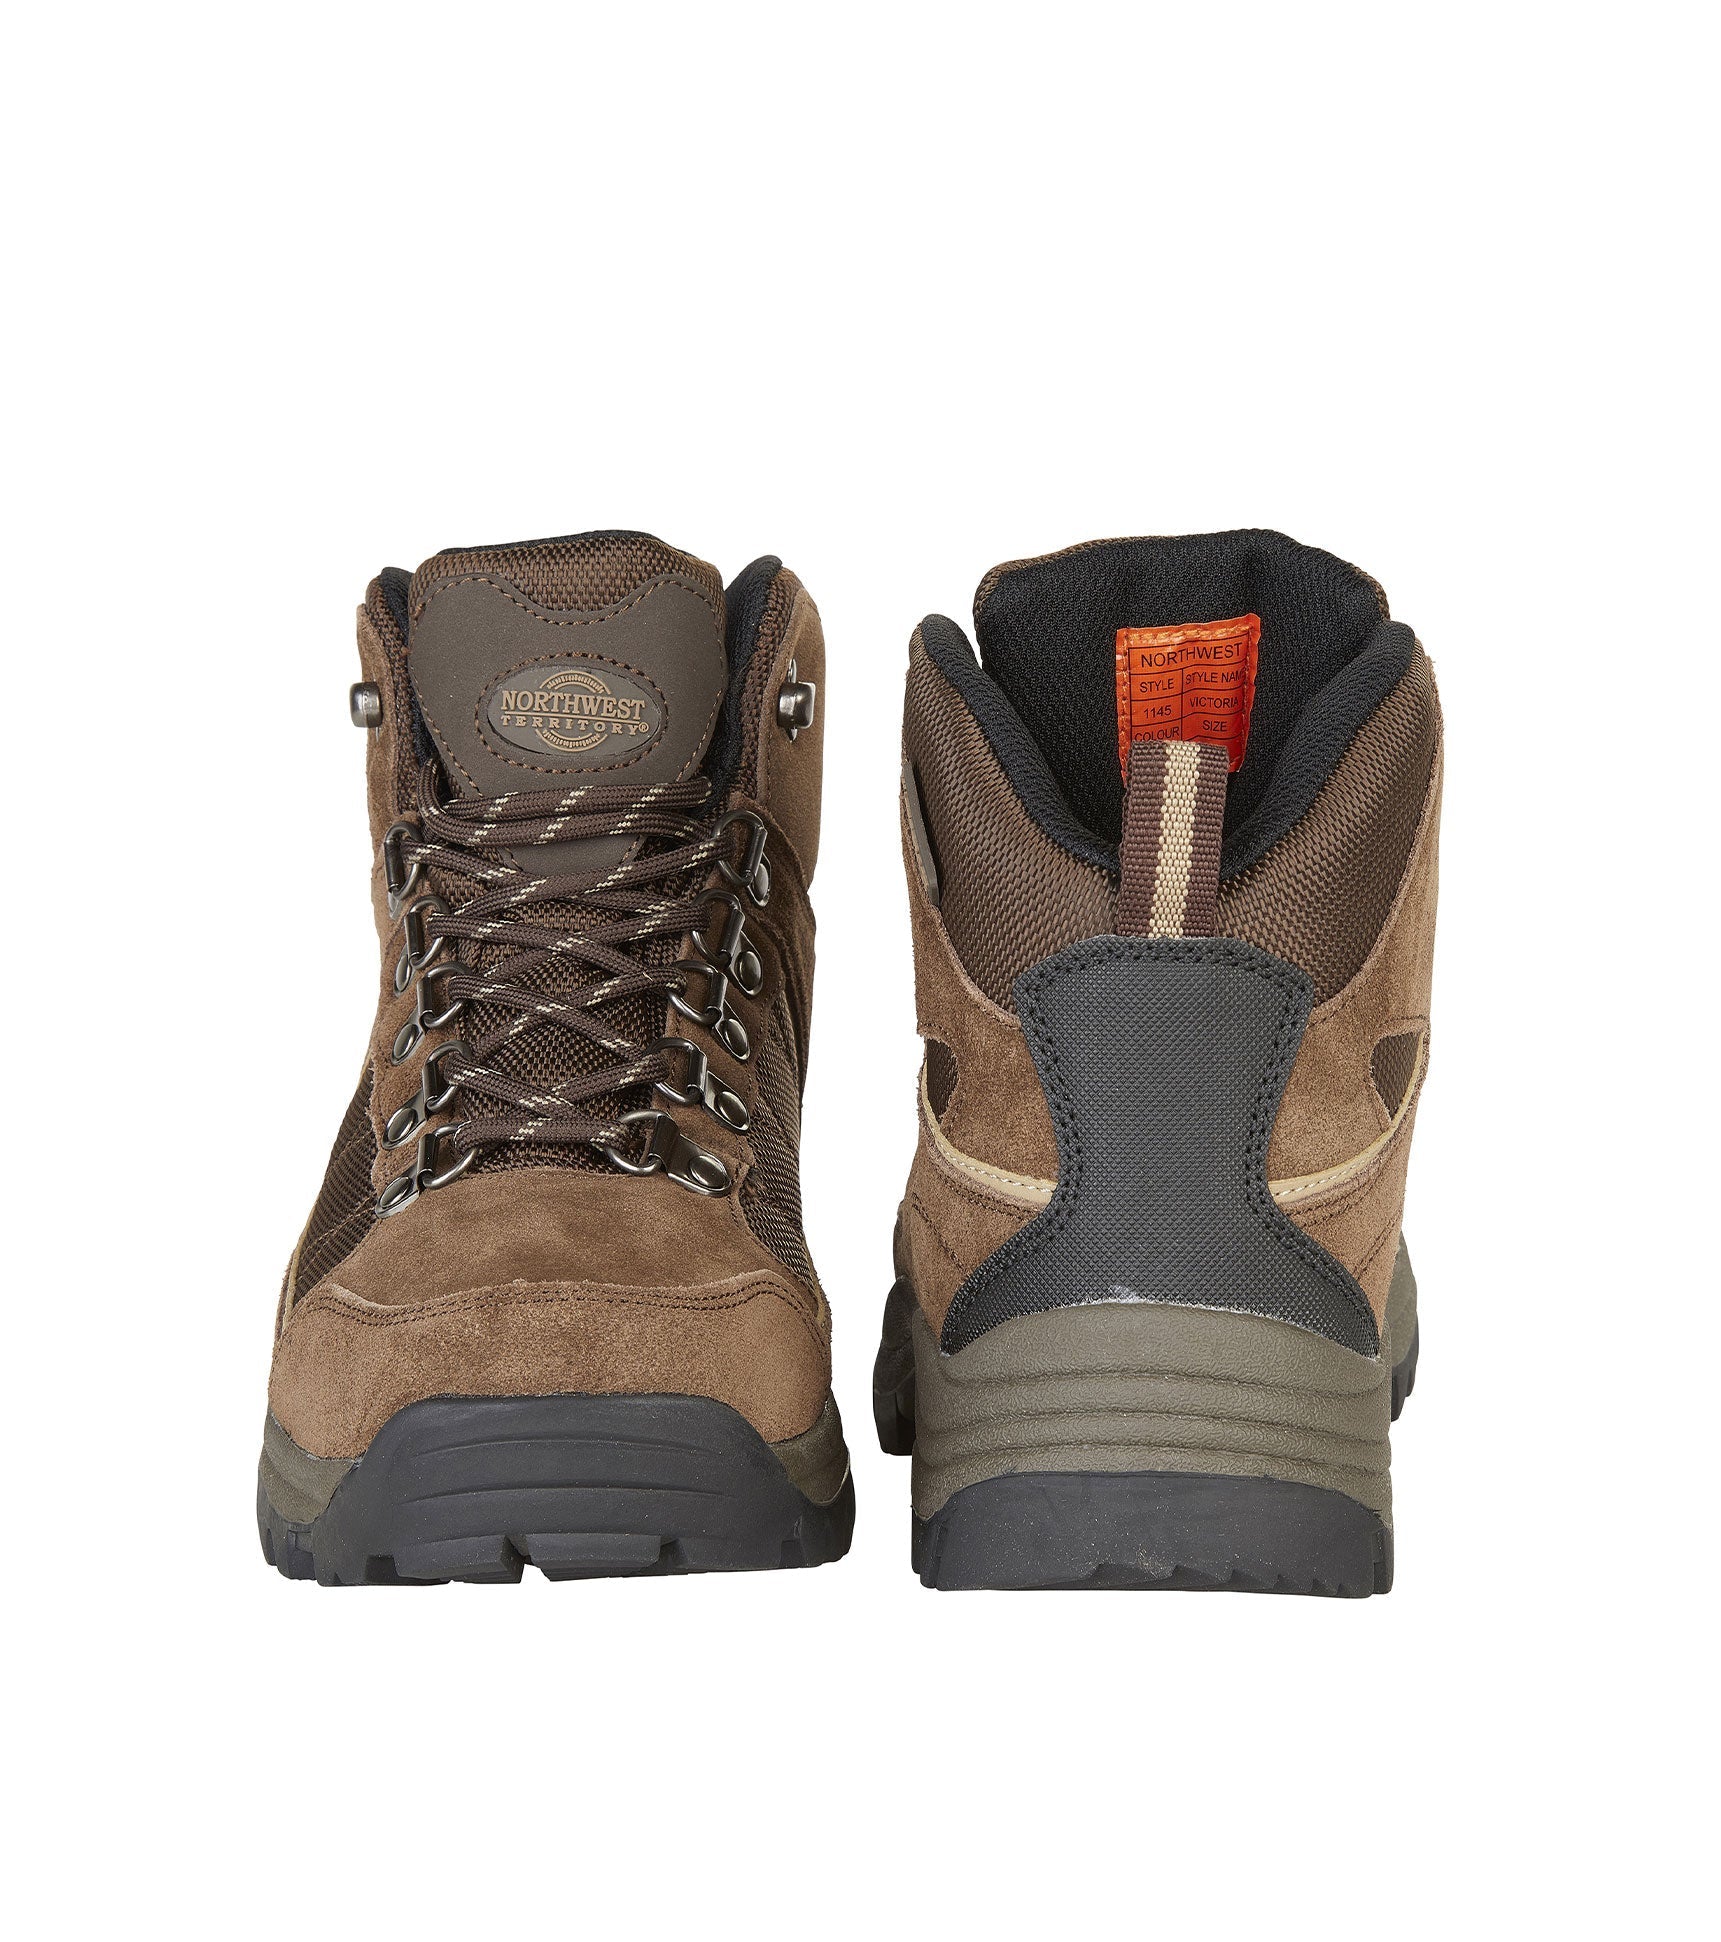 Women's Suede Leather Waterproof Walking Boots